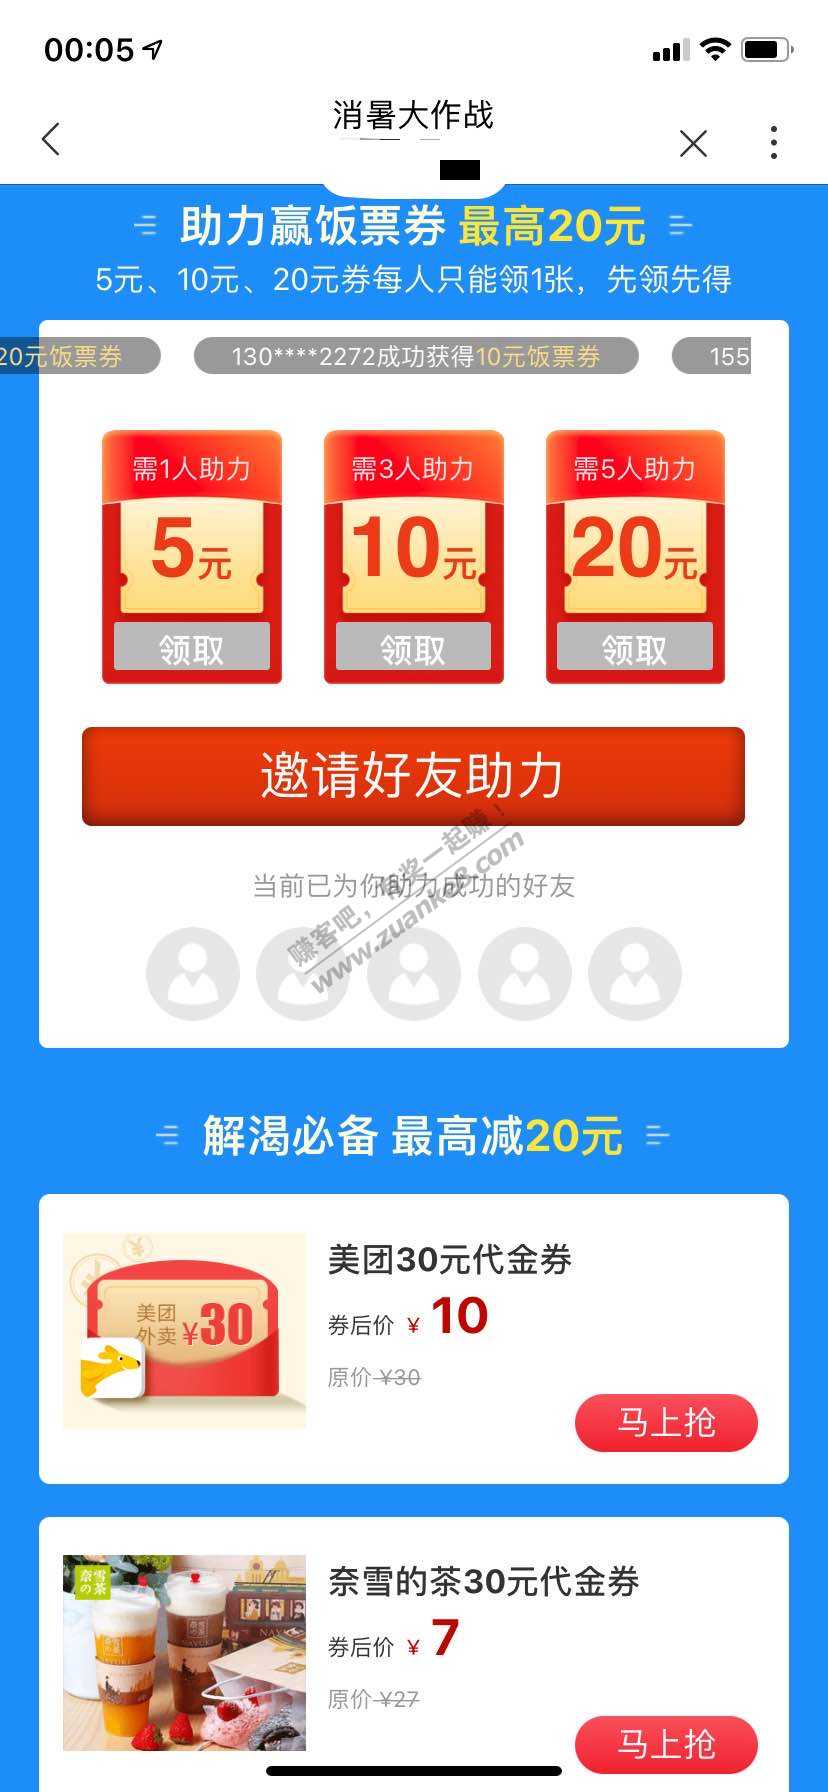 联通饭票活动-惠小助(52huixz.com)